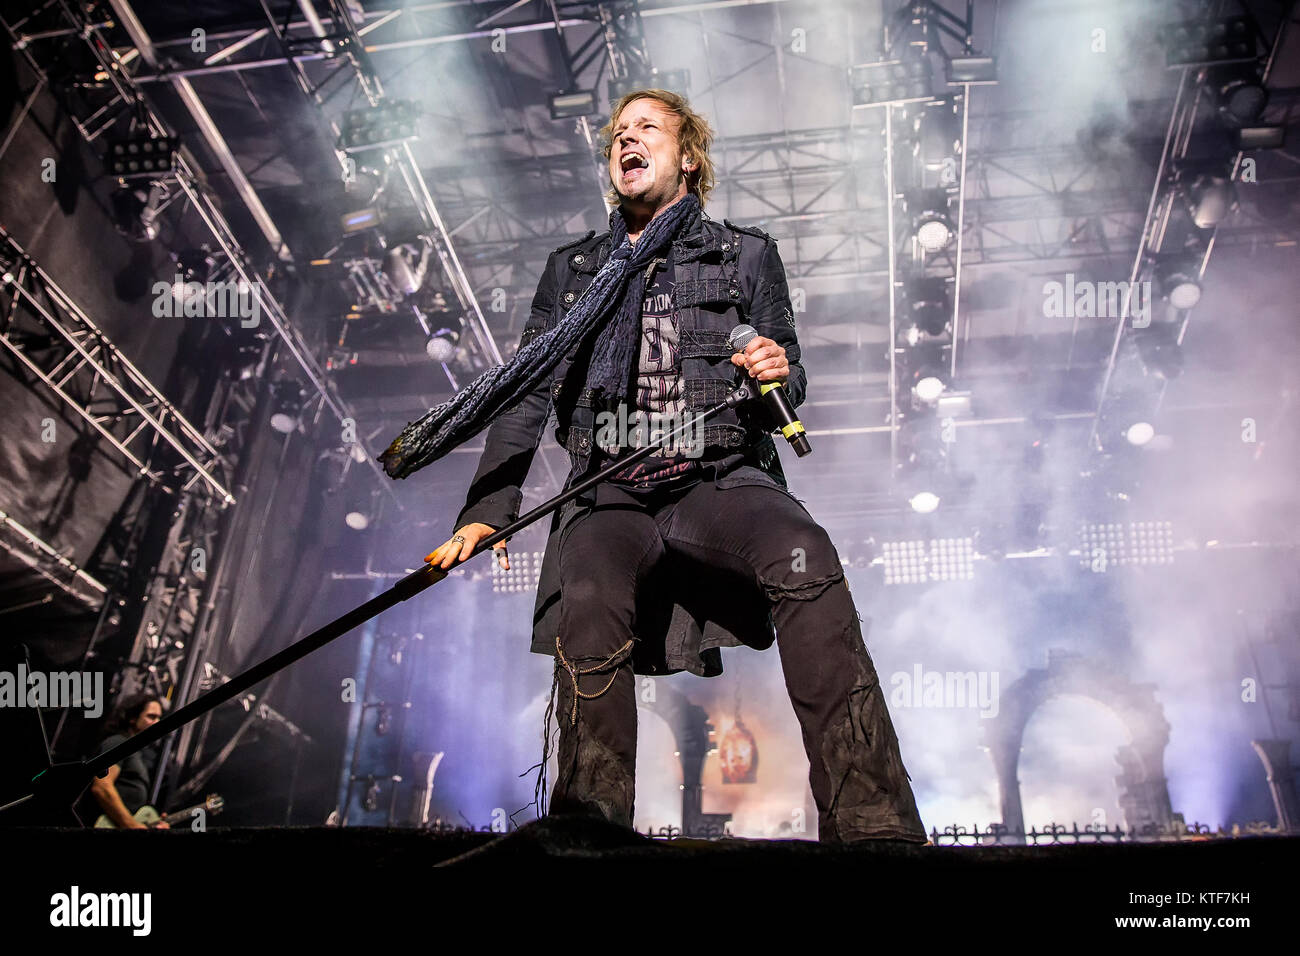 Il tedesco symphonic metal band Avantasia esegue un concerto dal vivo al Sweden Rock Festival 2016. Qui la cantante Tobias Sammet è visto dal vivo sul palco. La Svezia, 11/06 2016. Foto Stock